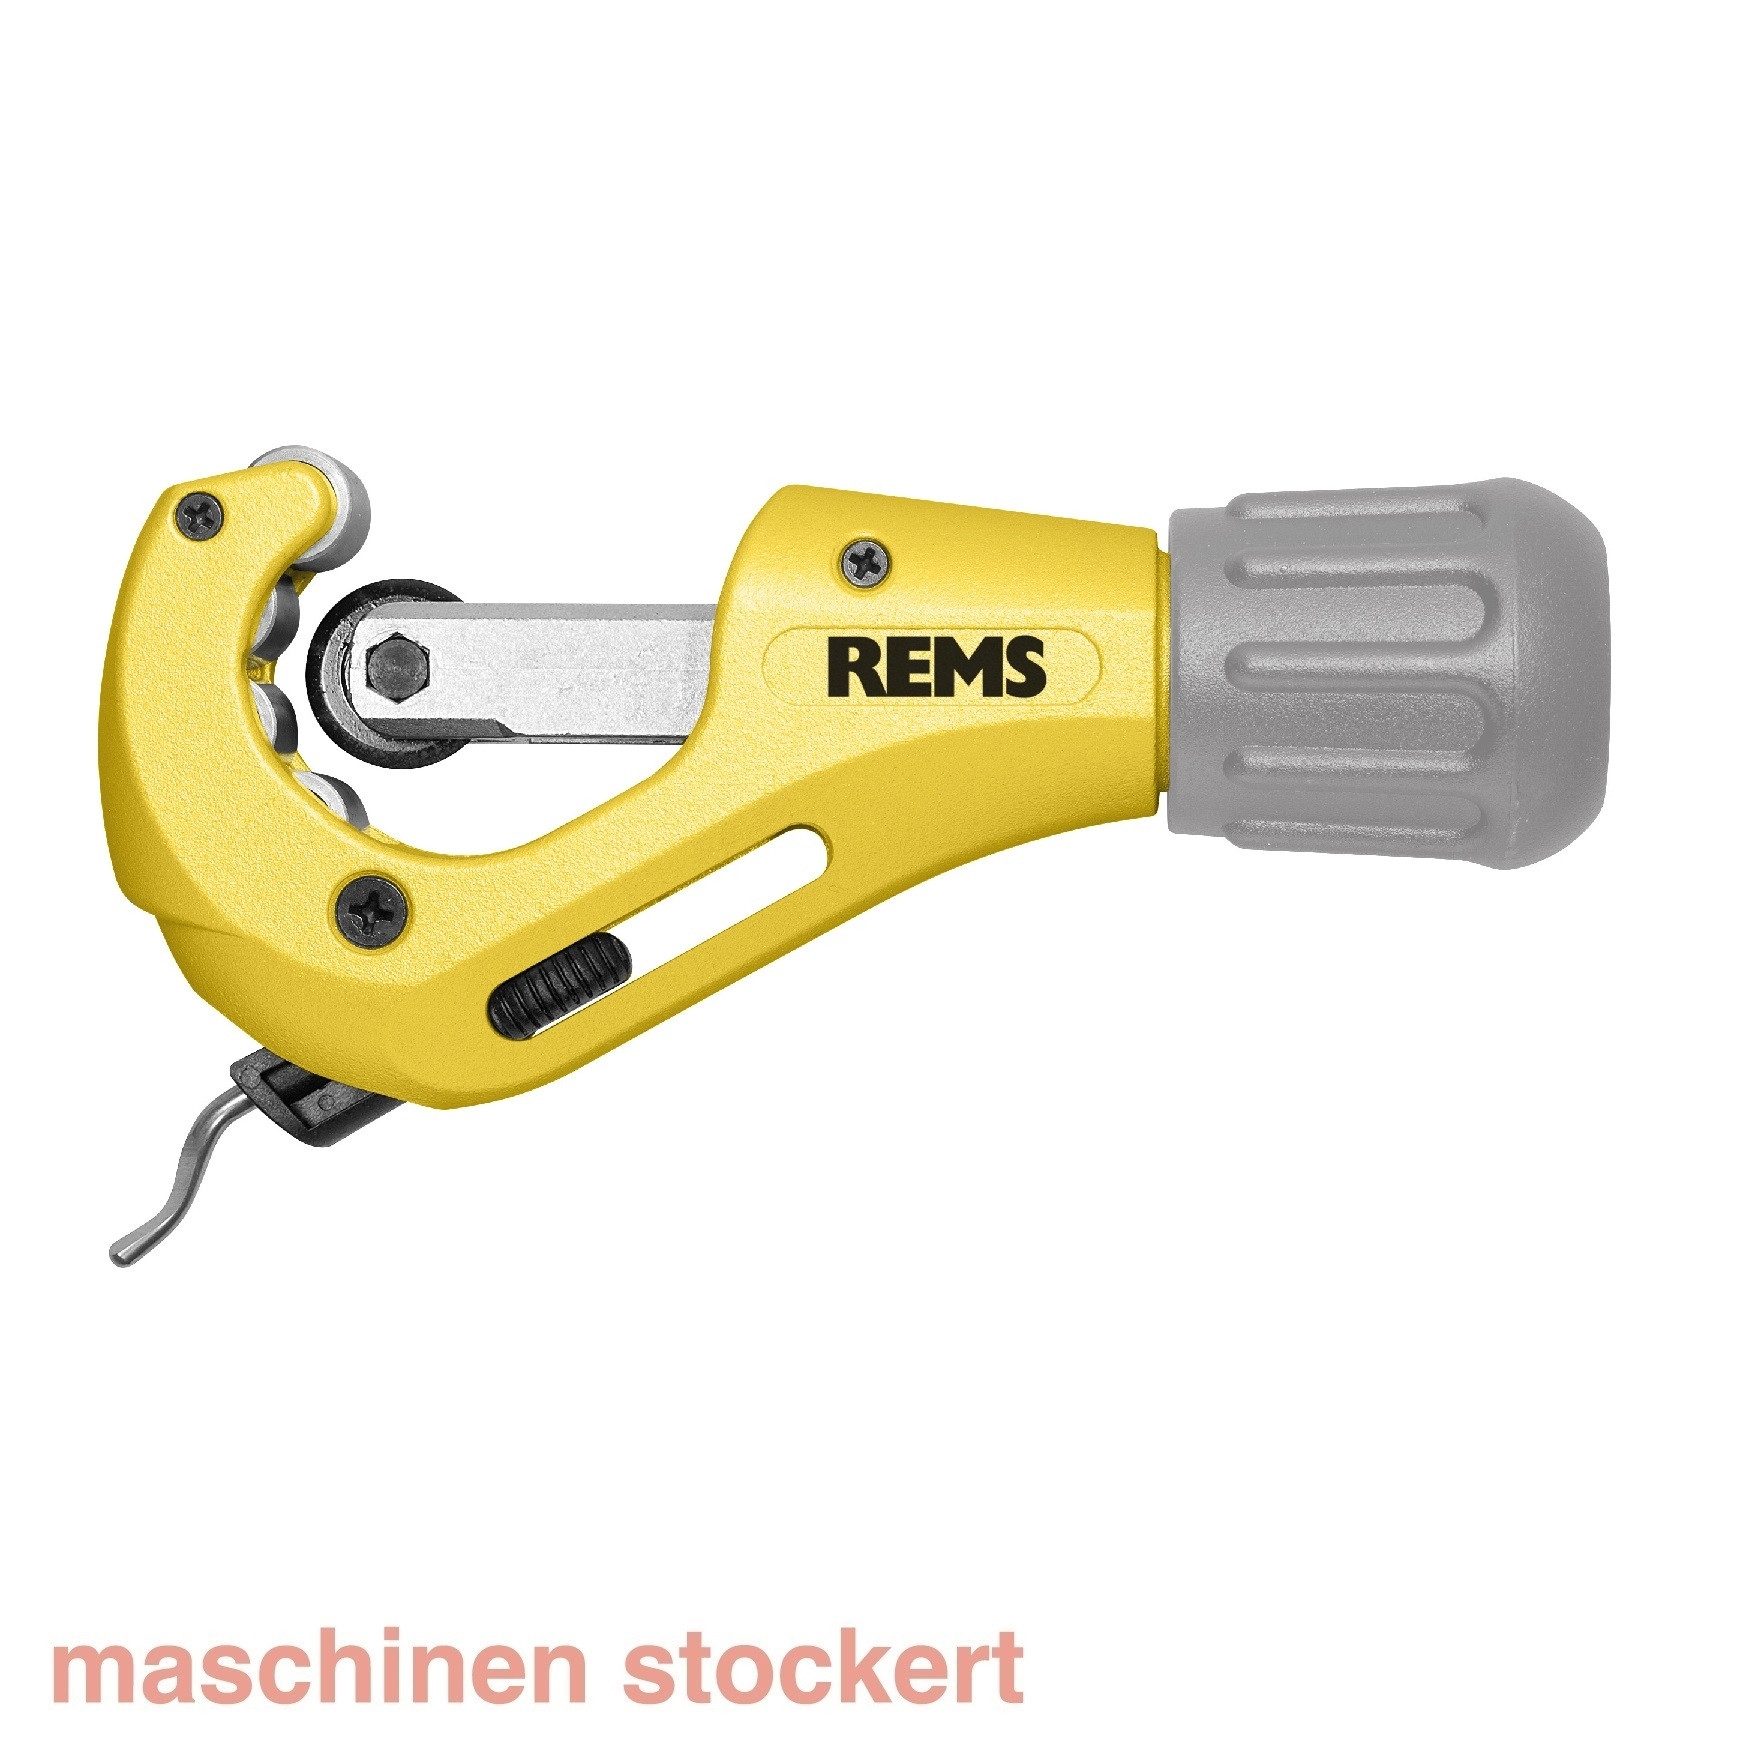 Rems Rohrschneider RAS Cu-Inox 3-35 S Rohrabschneider 113351